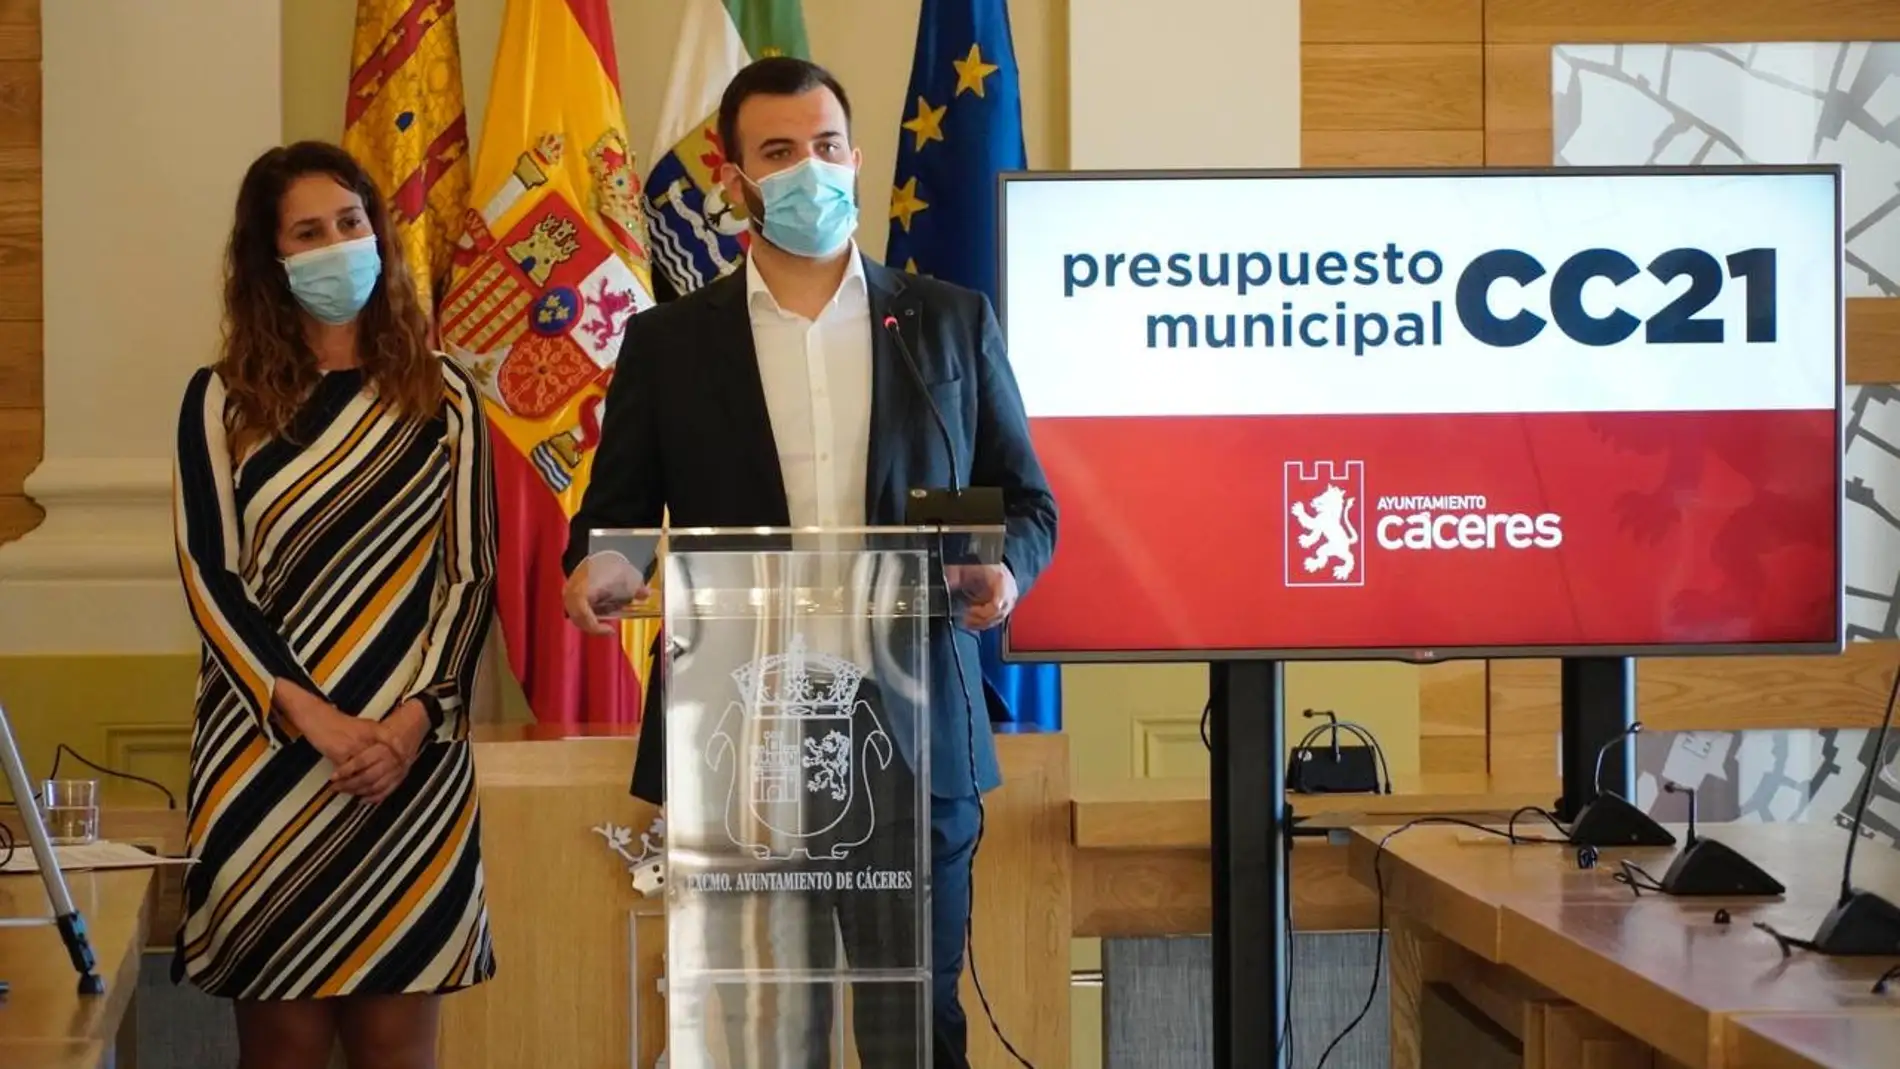 El presupuesto del Ayuntamiento de Cáceres asciende a 78,9 millones, con la prioridad de generar empleo y apoyar a las familias